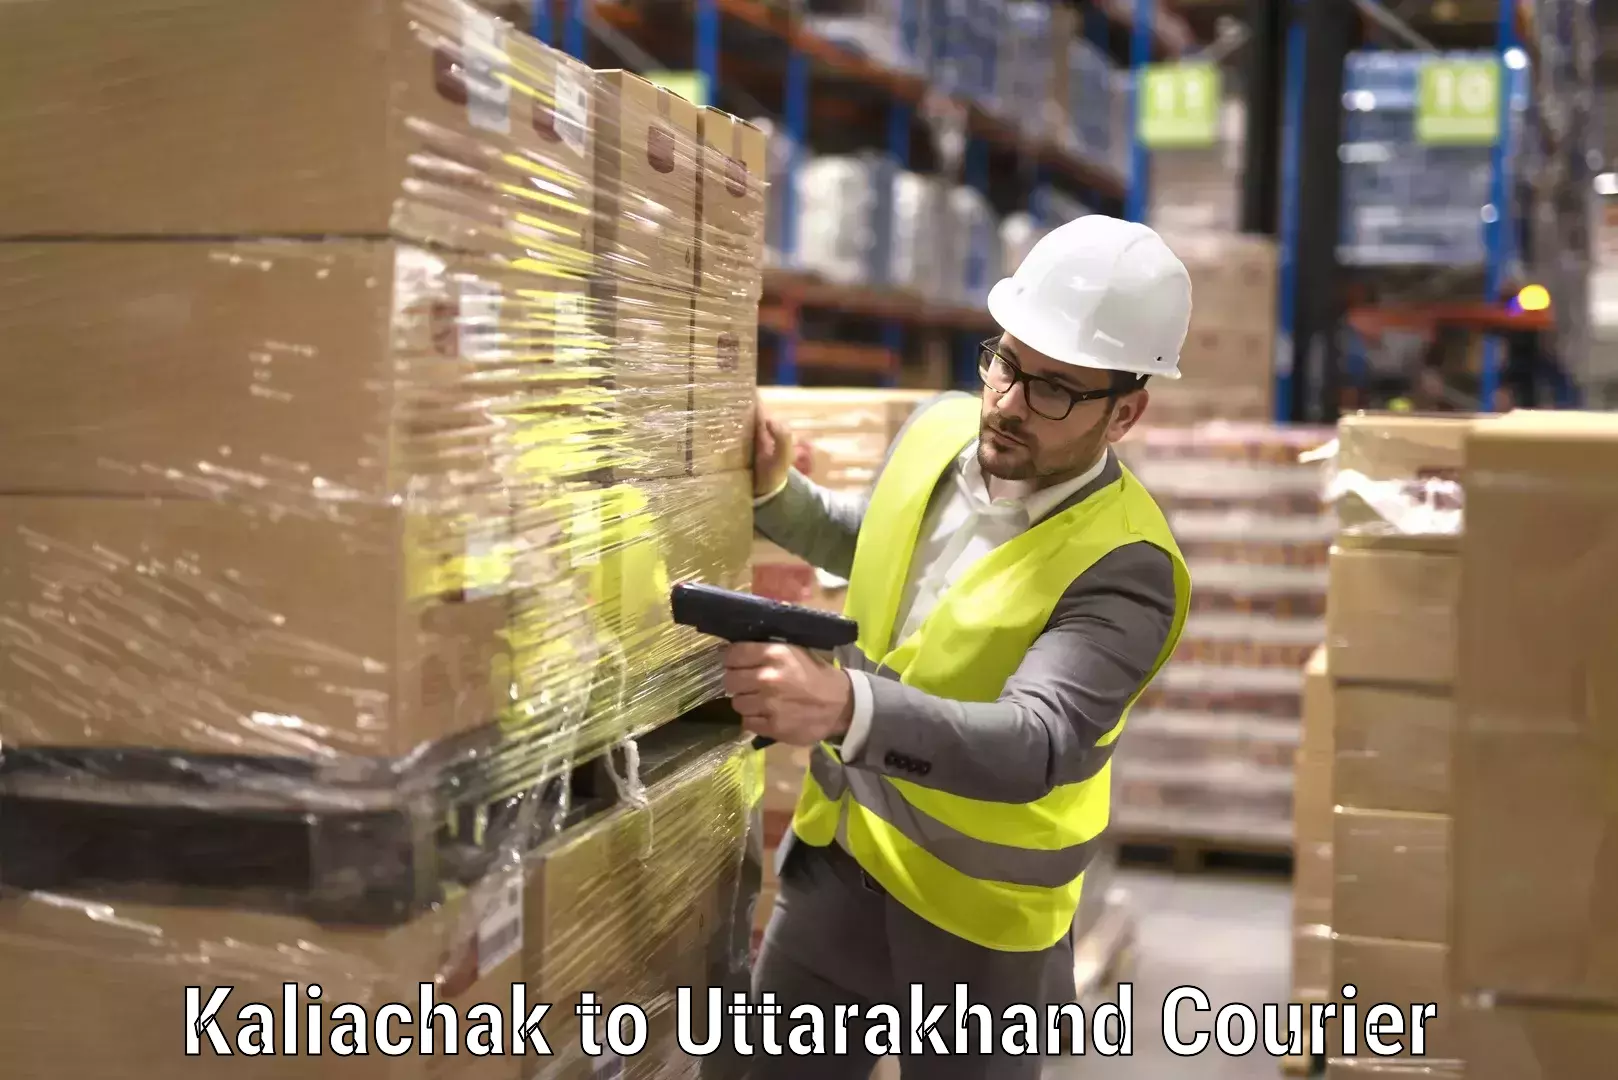 Efficient relocation services in Kaliachak to Uttarakhand